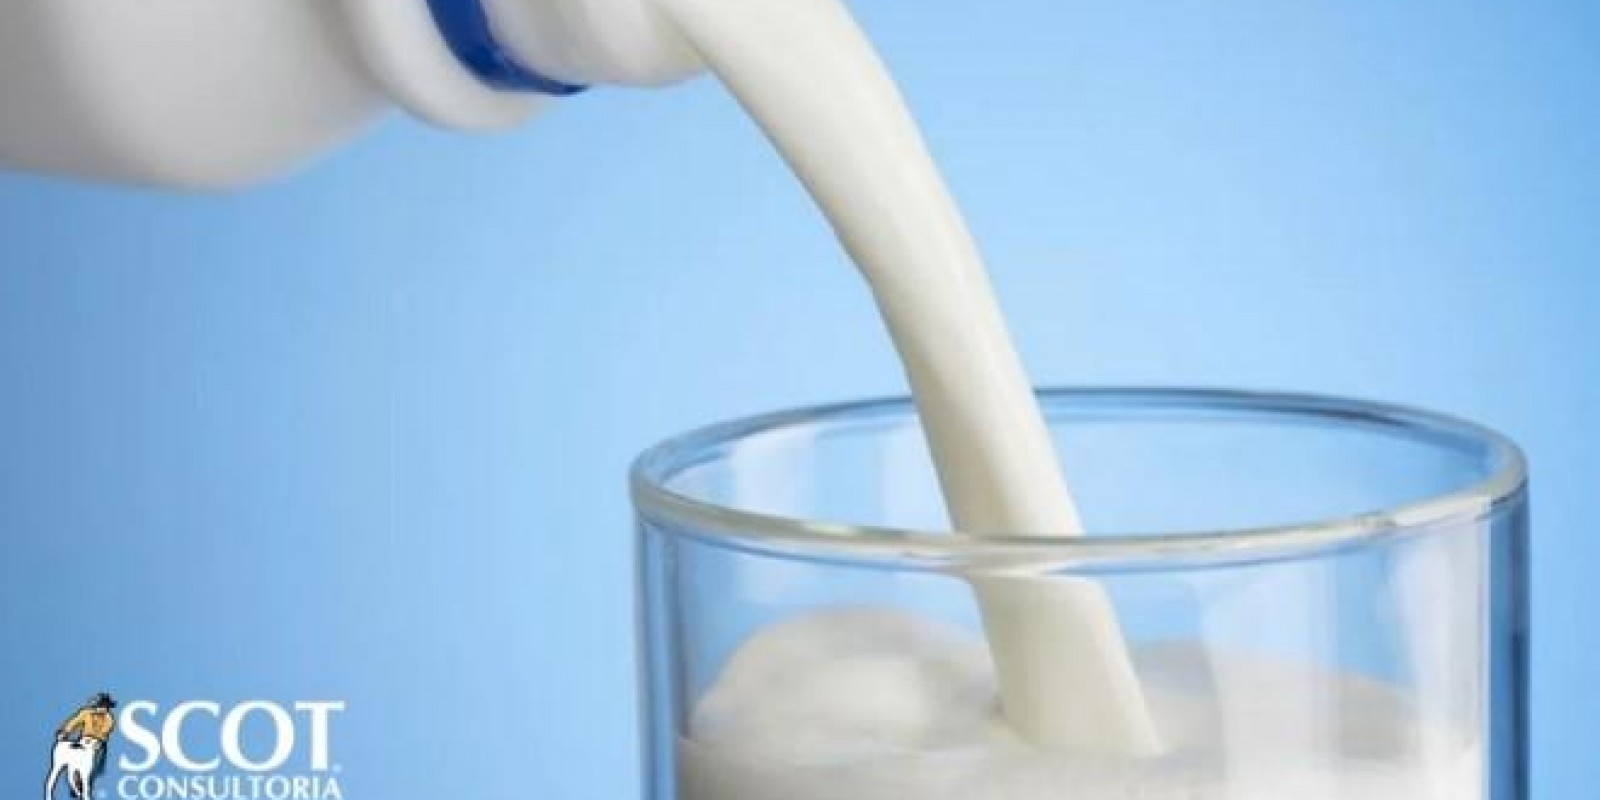 Quarto mês de alta para o produtor de leite, mas atenção aos reflexos do coronavírus sobre a demanda